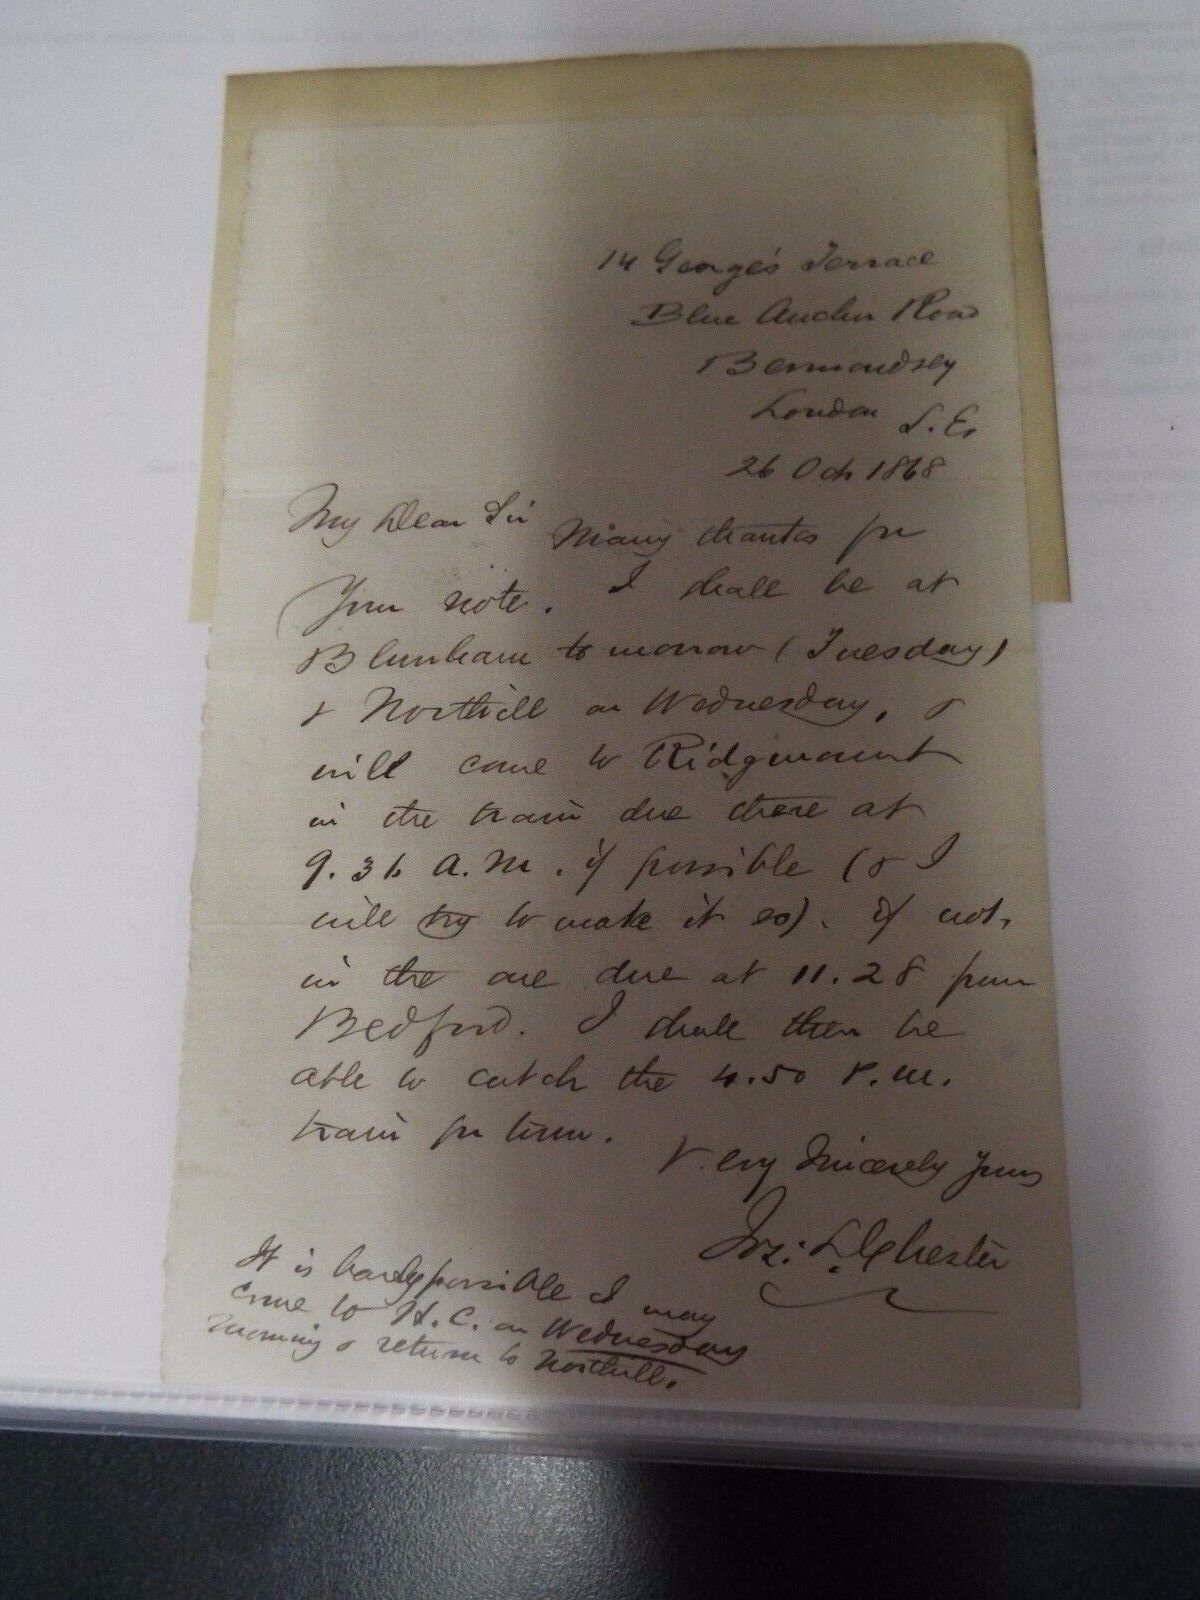 American genealogist, poet Joseph Lemuel Chester - 1868 - signed letter